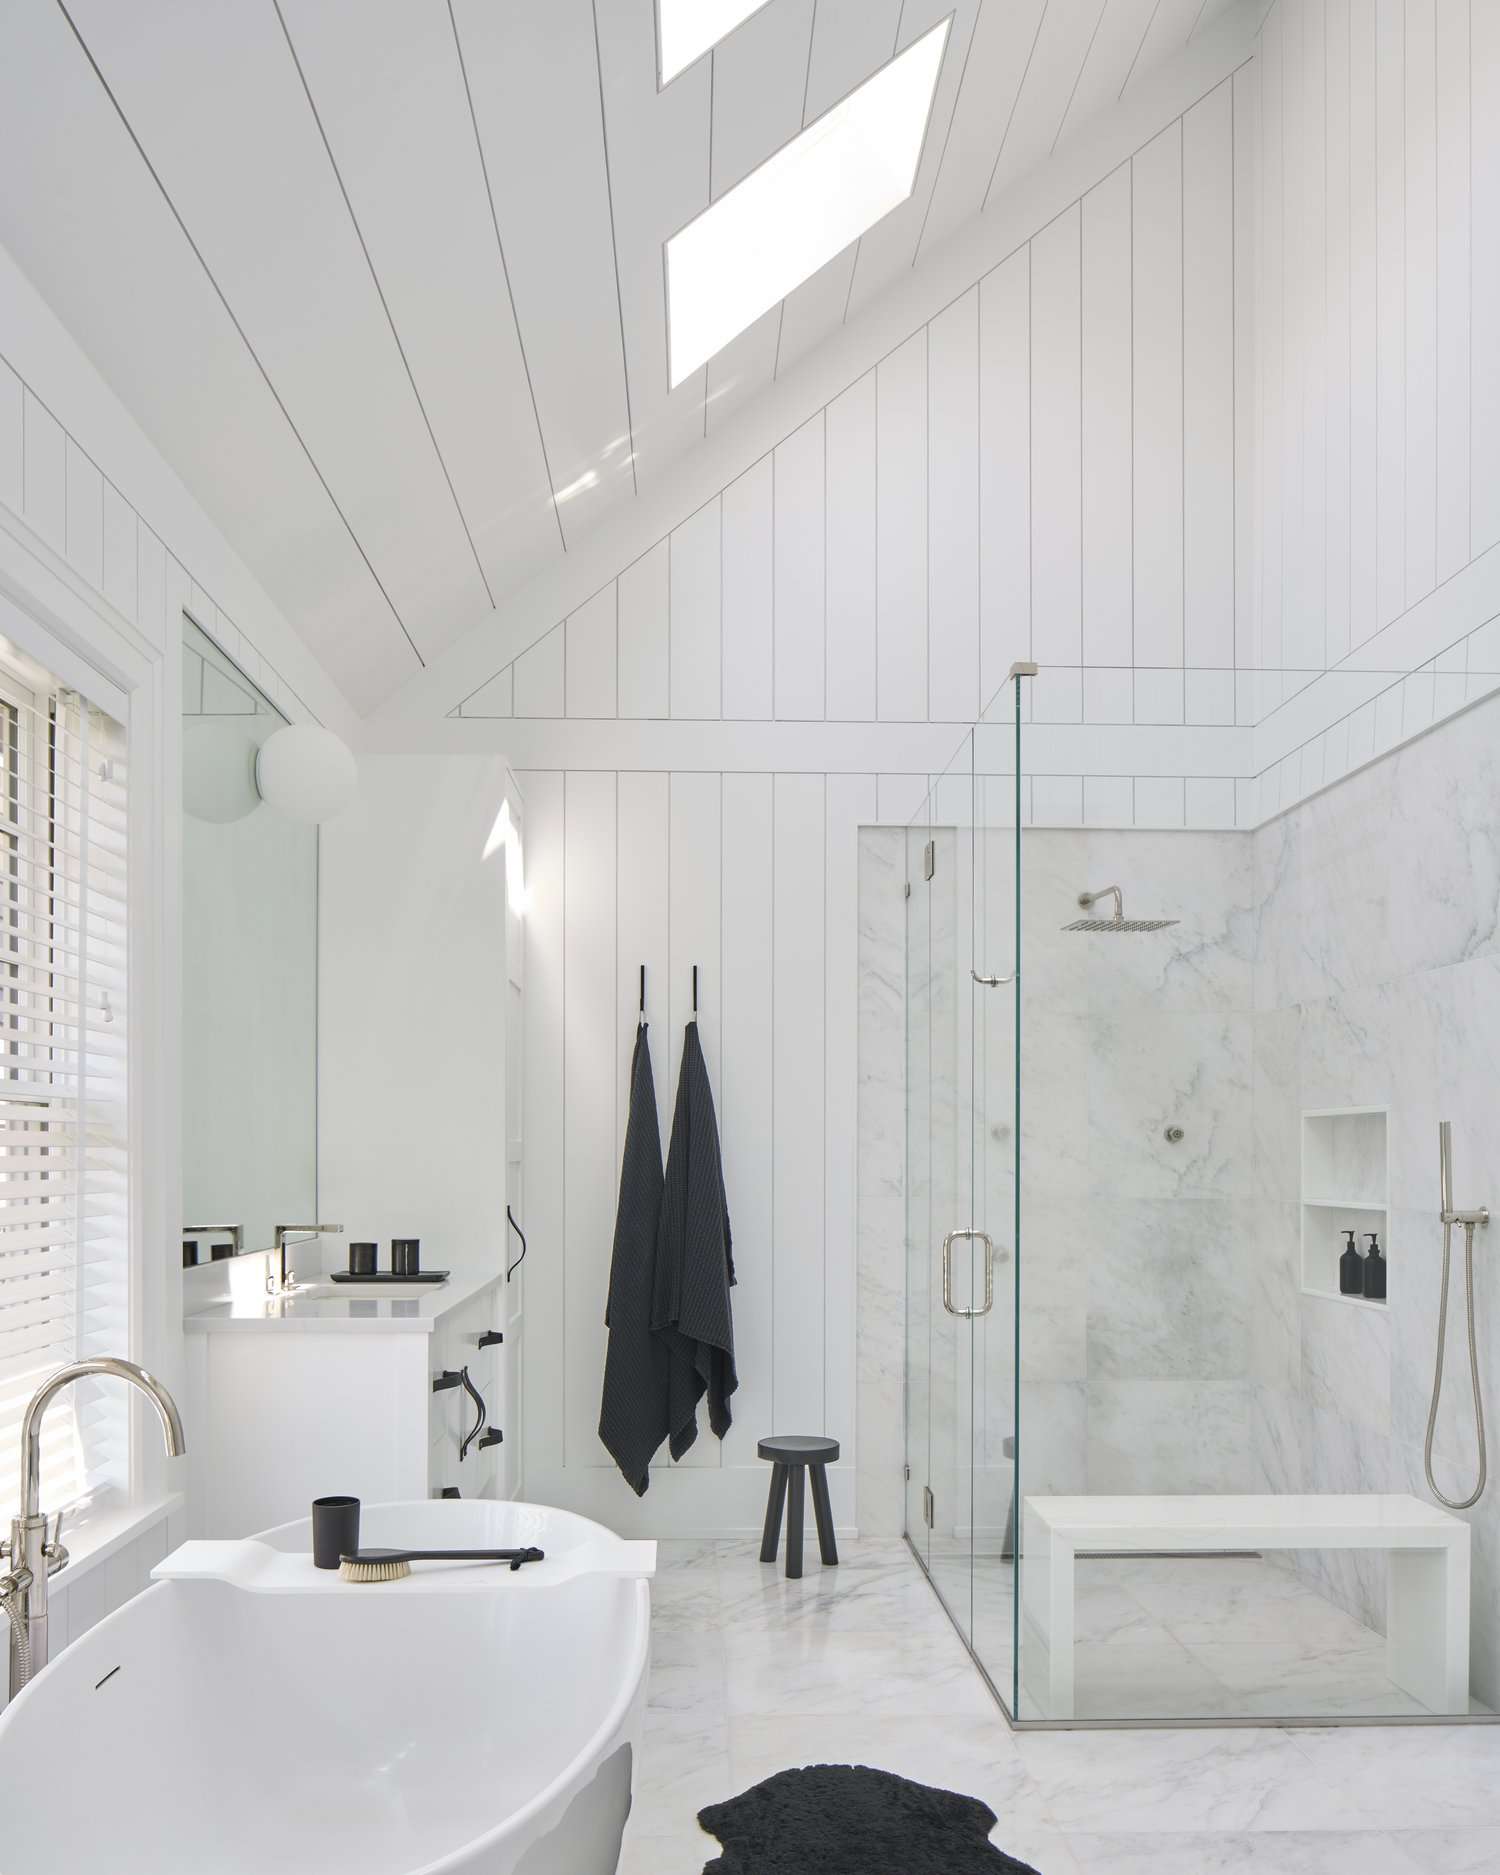 murs et plafond de la salle de bain en shiplap blanc